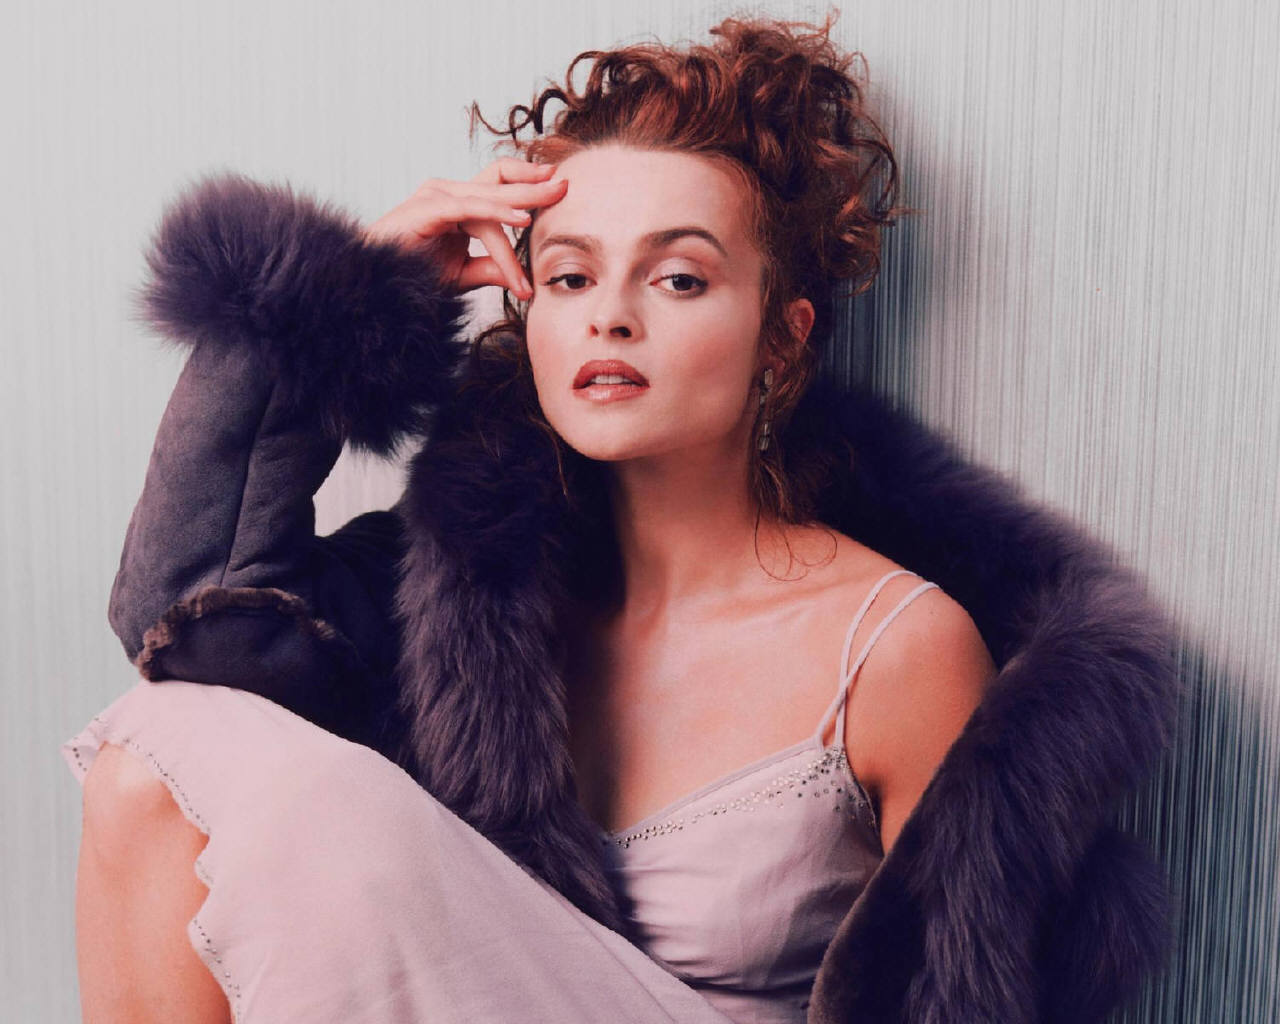 High Resolution Wallpaper | Helena Bonham Carter 1280x1024 px